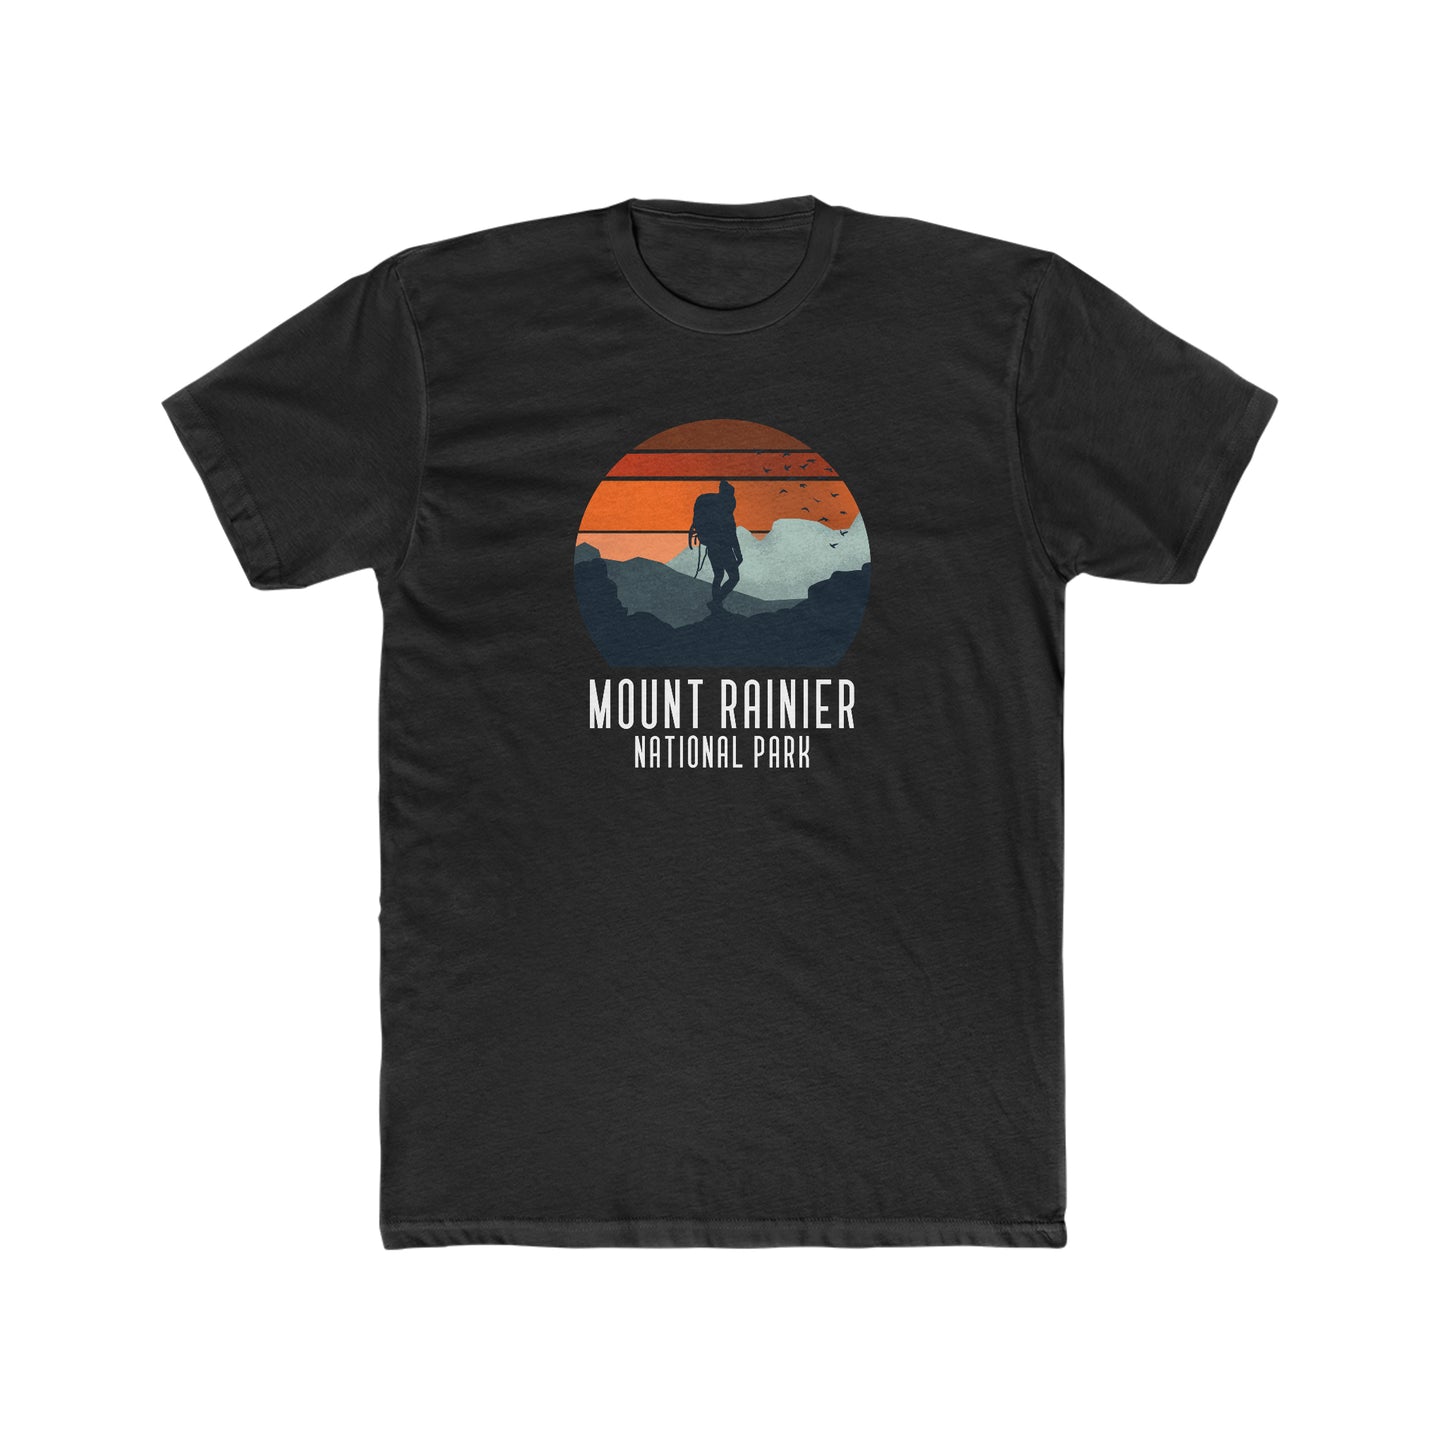 Mount Rainier National Park T-Shirt - Hiker Graphic